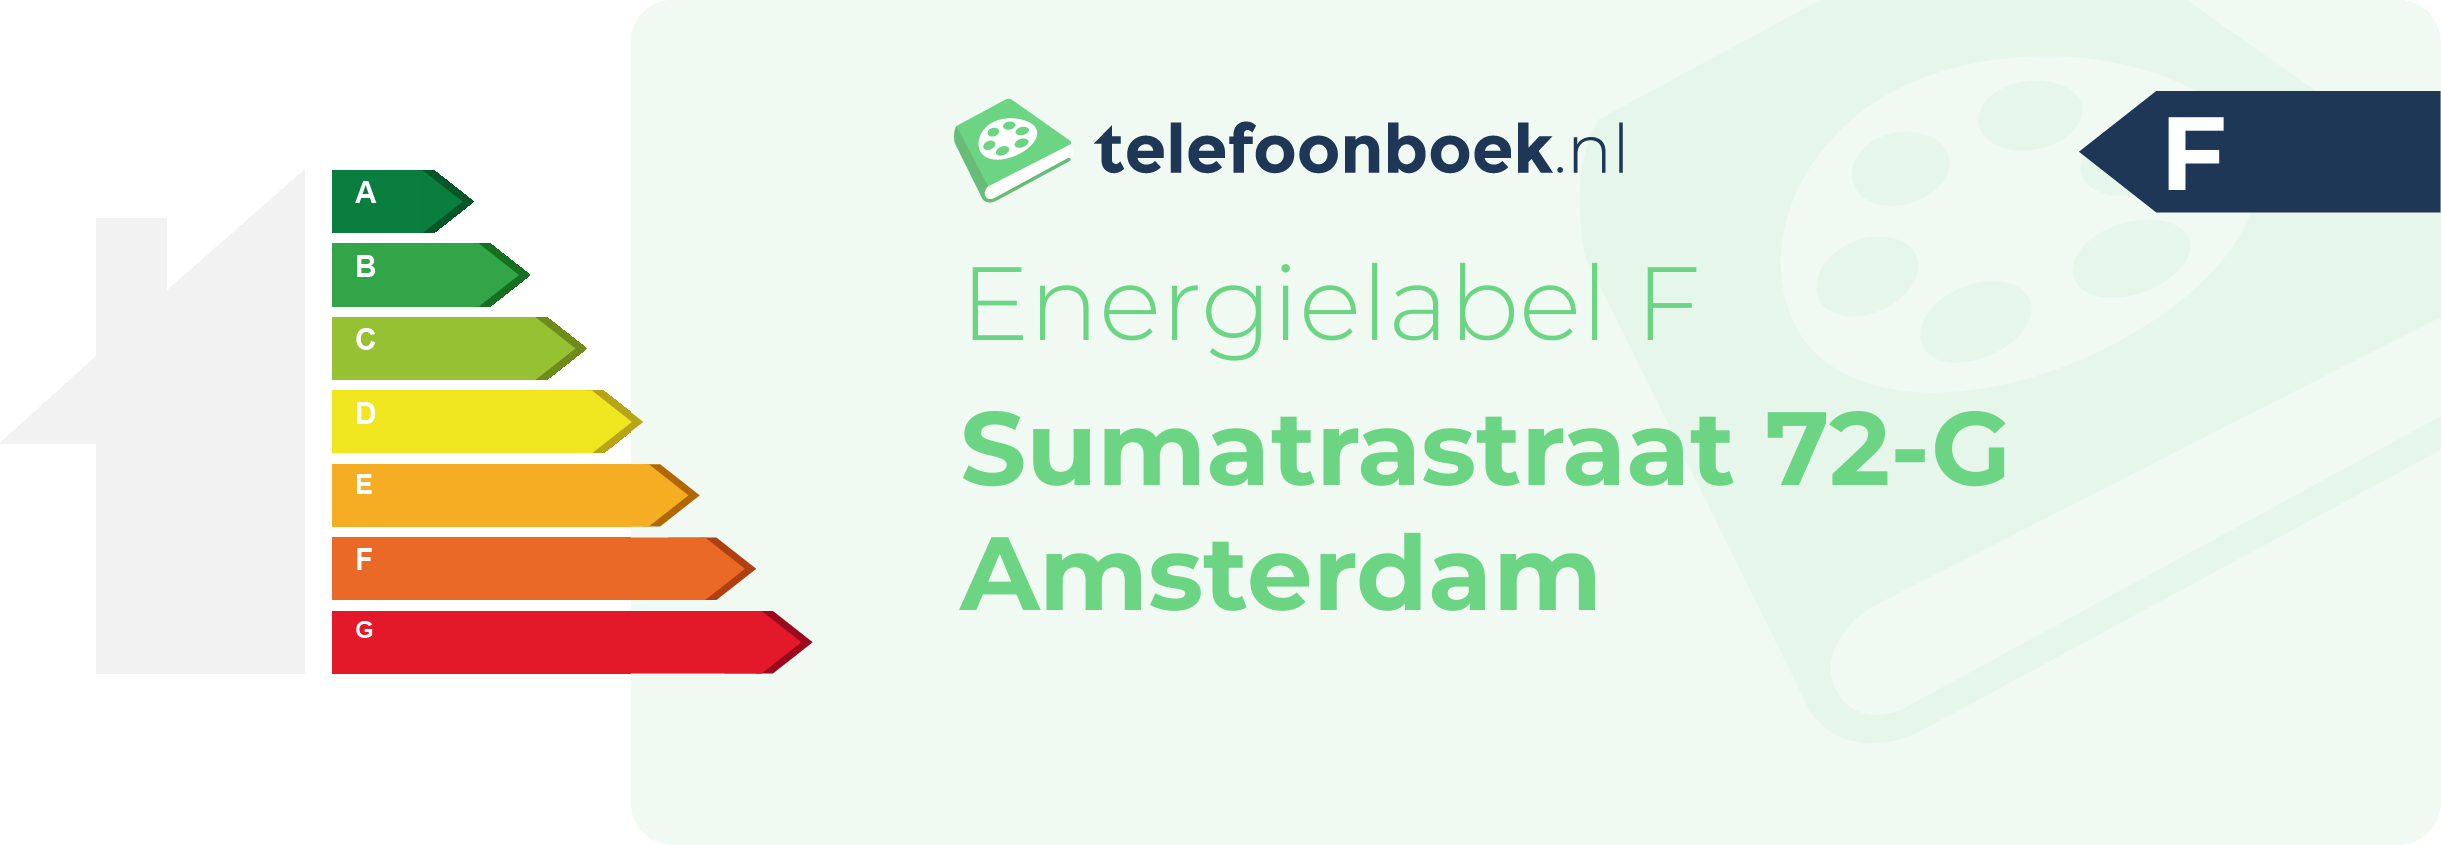 Energielabel Sumatrastraat 72-G Amsterdam